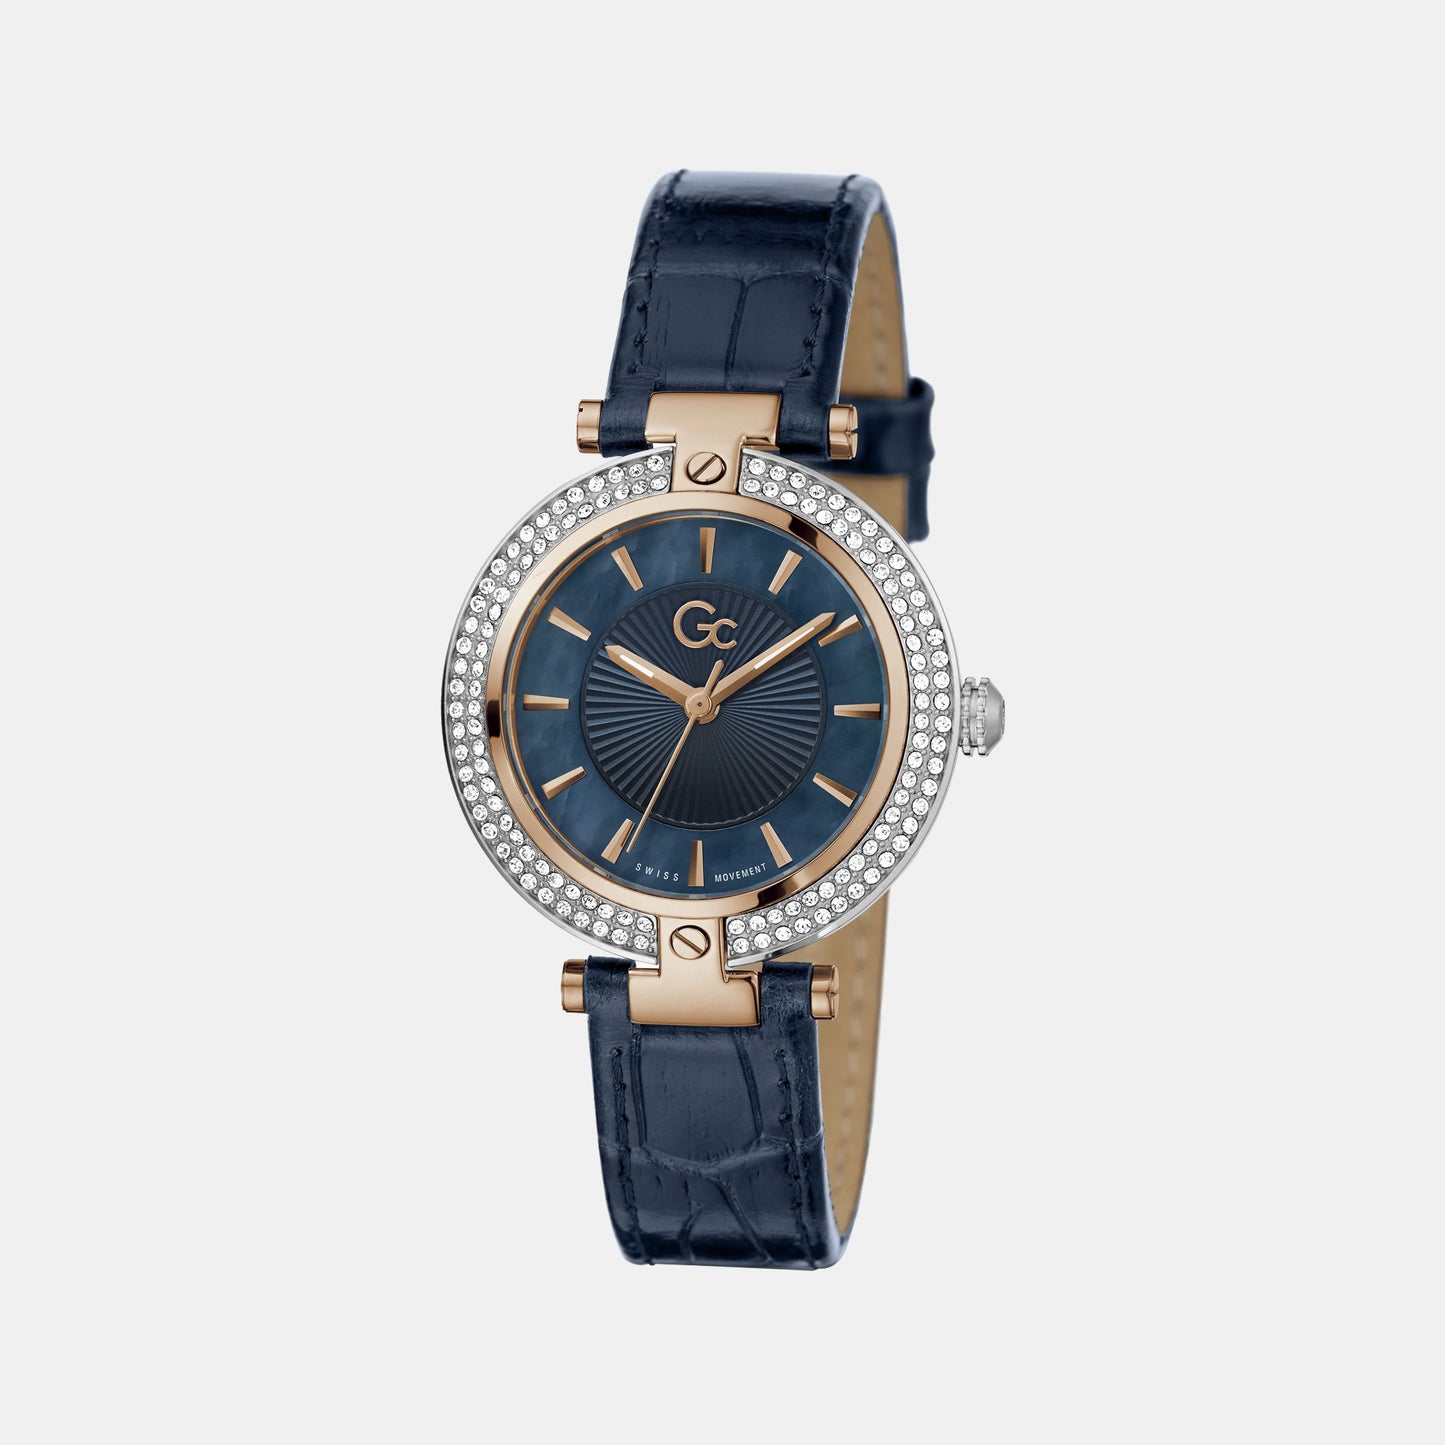 Female Blue Analog Genuine Leather Watch Z22003L7MF